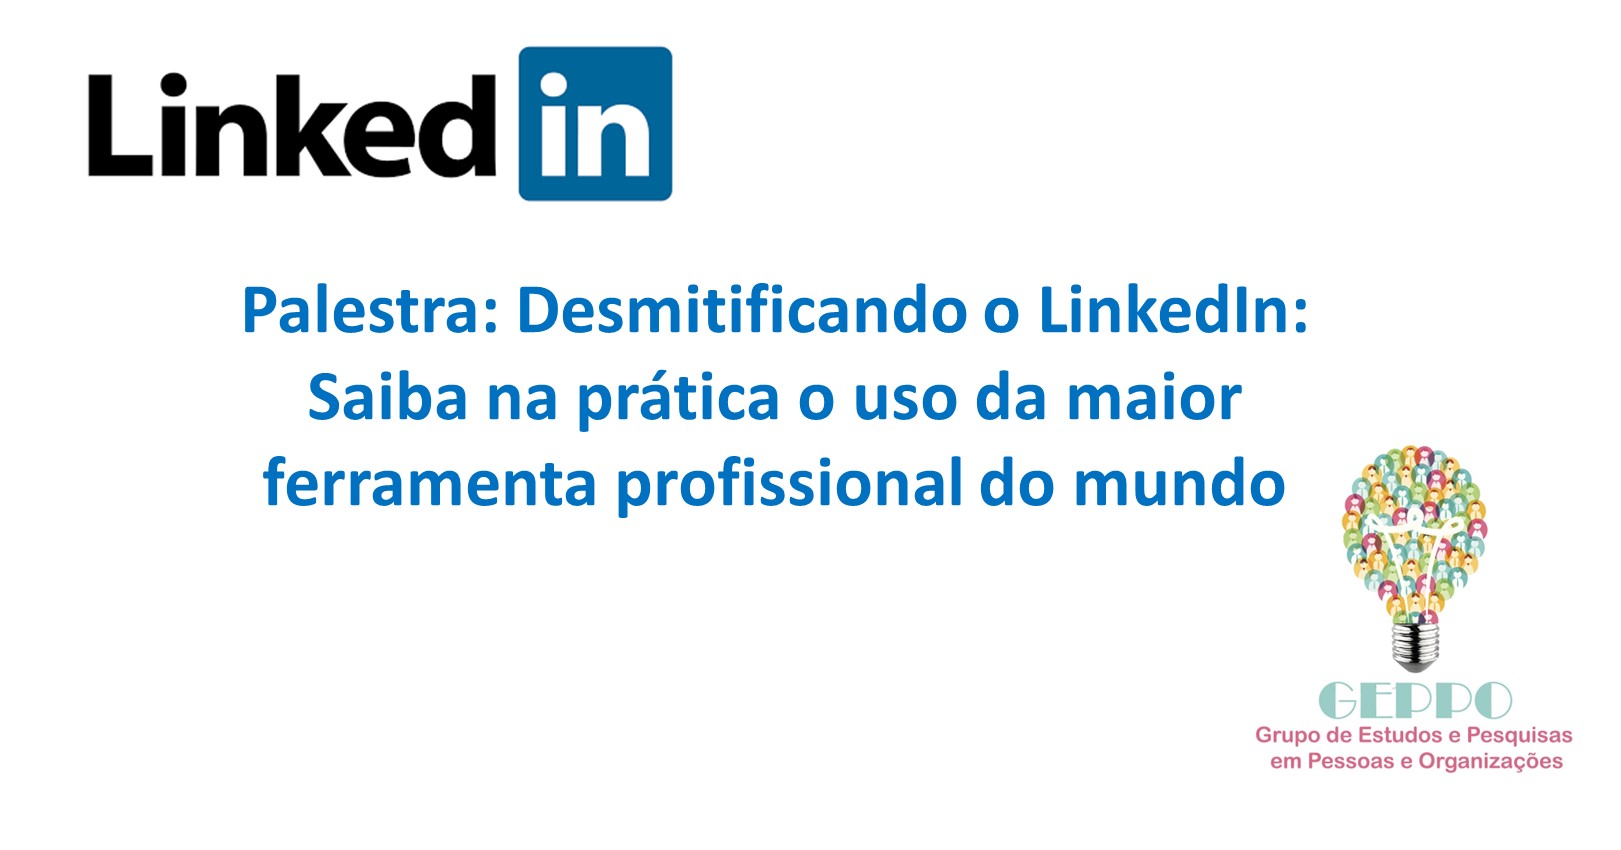 Palestra “Desmitificando o LinkedIn: Saiba na prática o uso da maior ferramenta profissional do mundo”